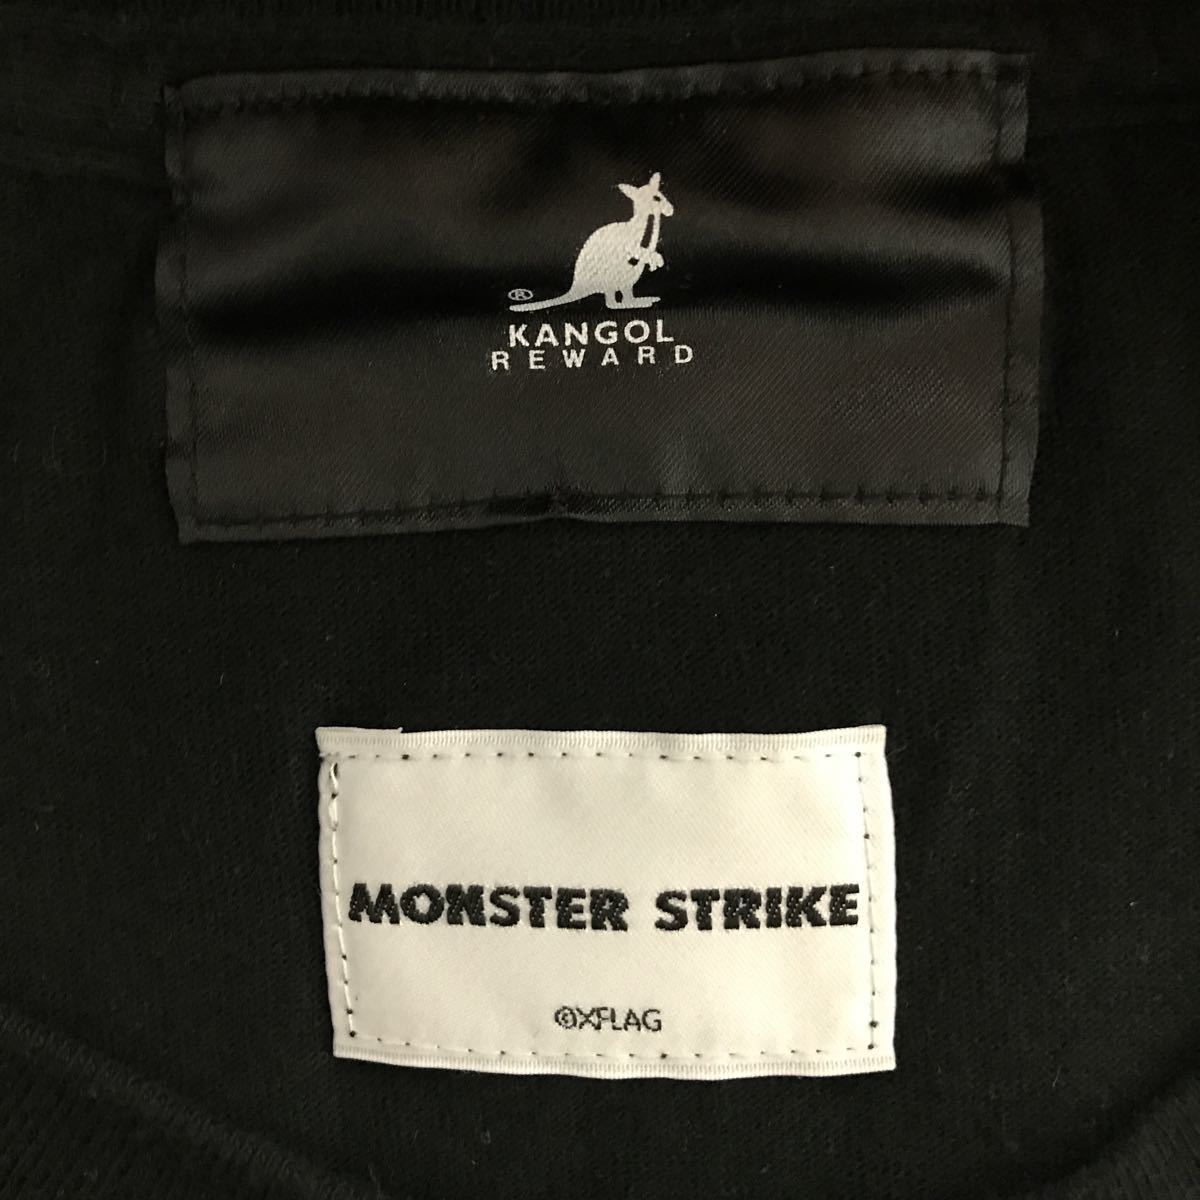 [ быстрое решение б/у одежда ]KANGOL REWARD×MONSTER STRIKE/ Kangol li слово × Monstar Strike / сотрудничество футболка /rusi мех / черный /M размер 